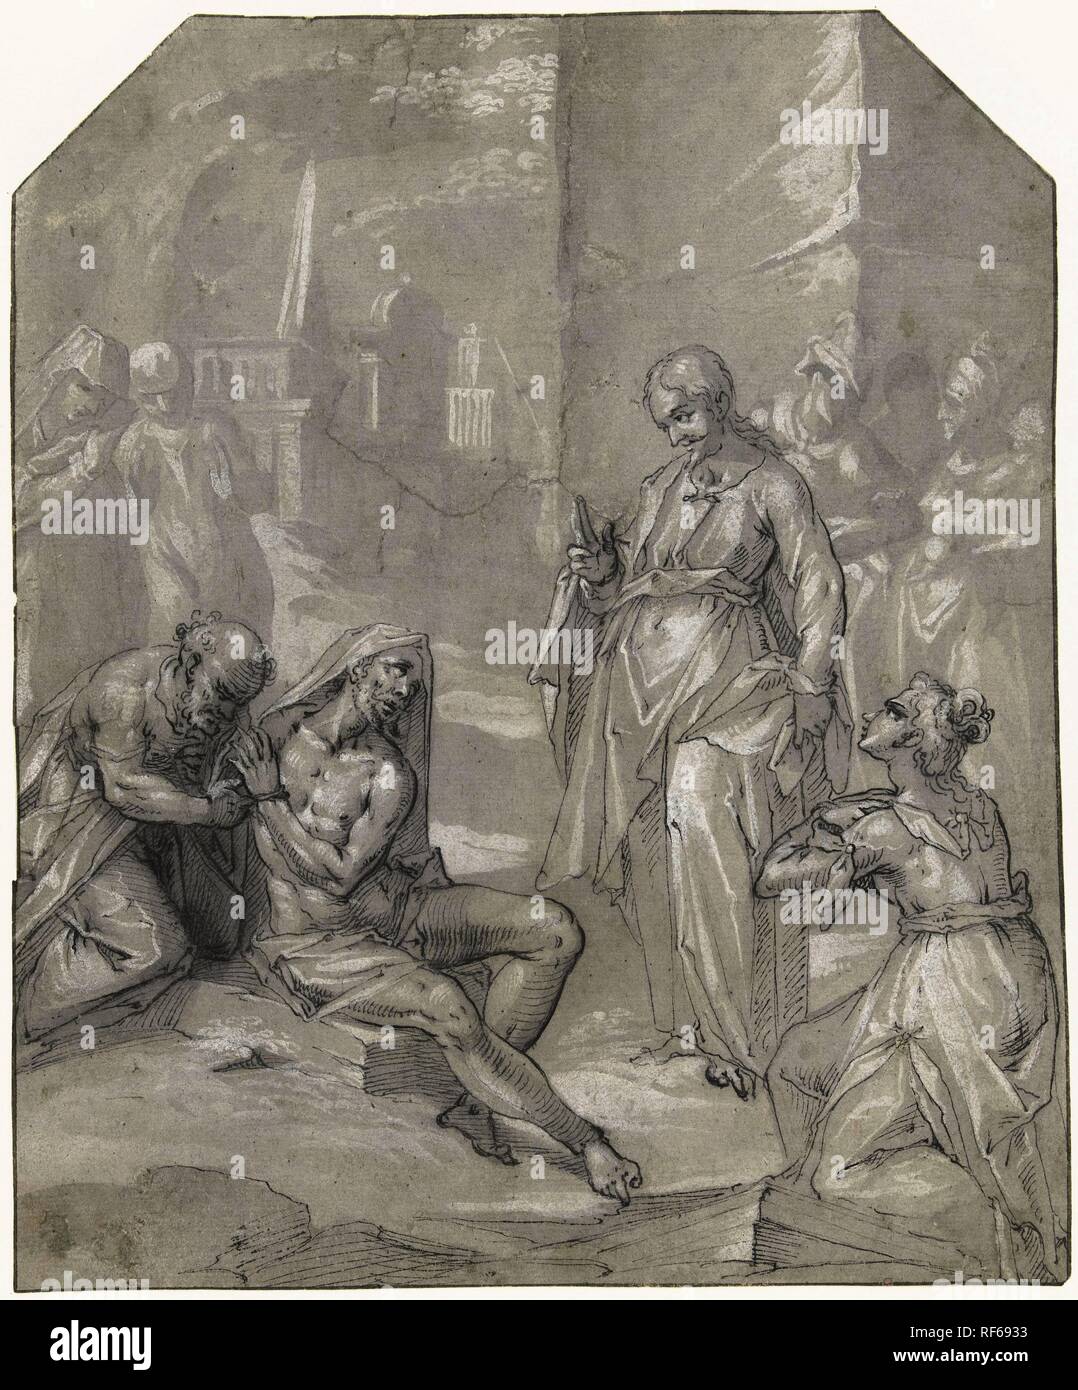 La risurrezione di Lazzaro. Relatore per parere: anonimo. Dating: 1600 - 1650. Misurazioni: h 230 mm × W 189 mm. Museo: Rijksmuseum Amsterdam. Foto Stock